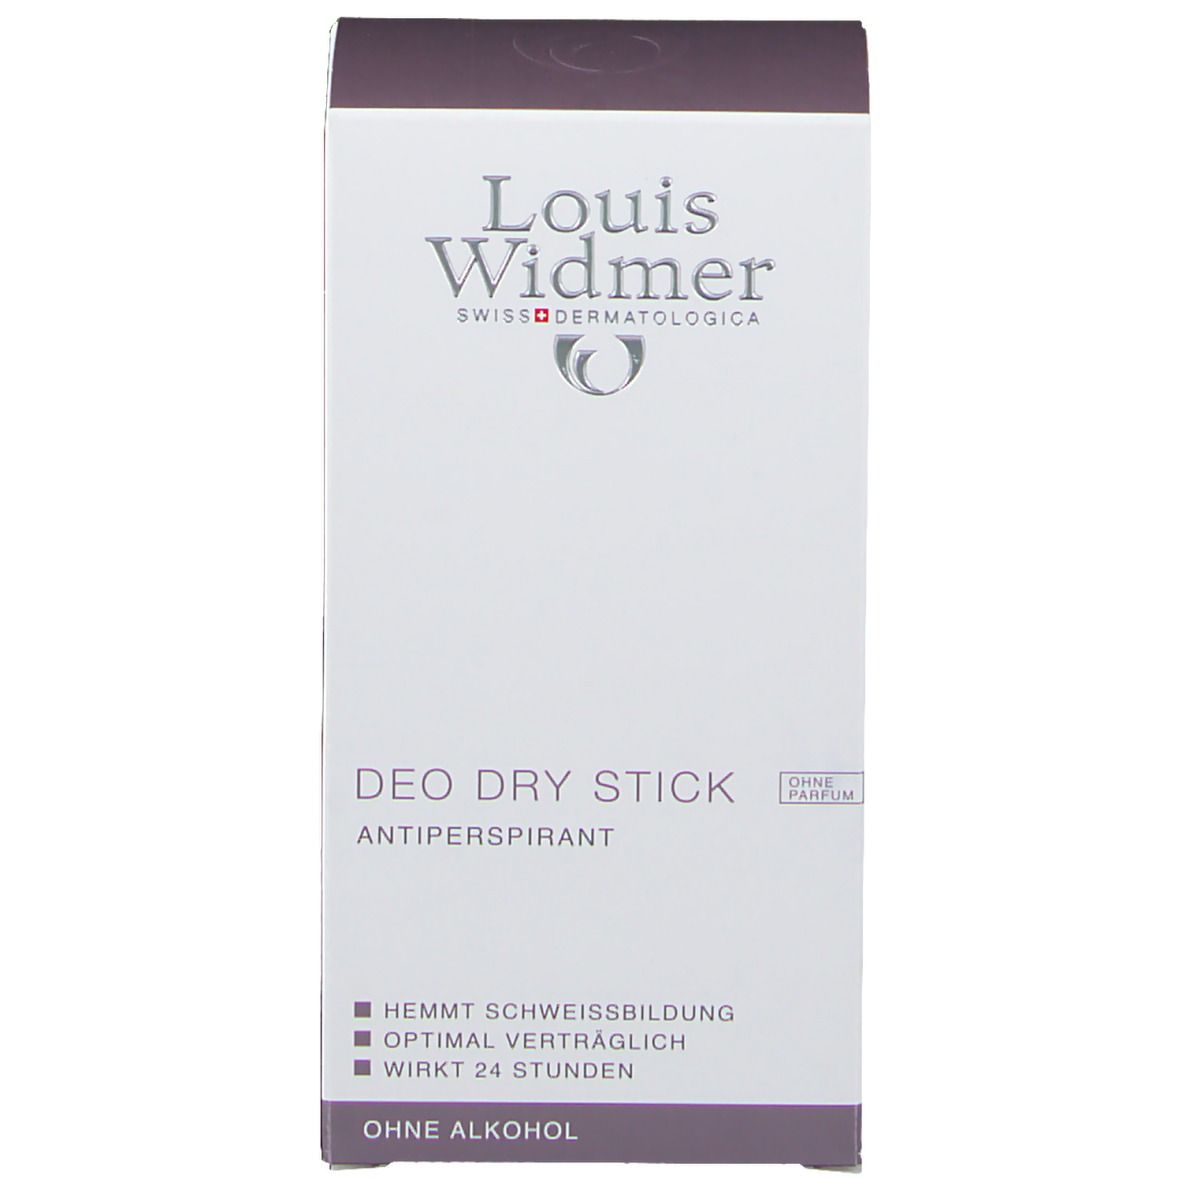 Louis Widmer Deo Dry Stick unparfümiert